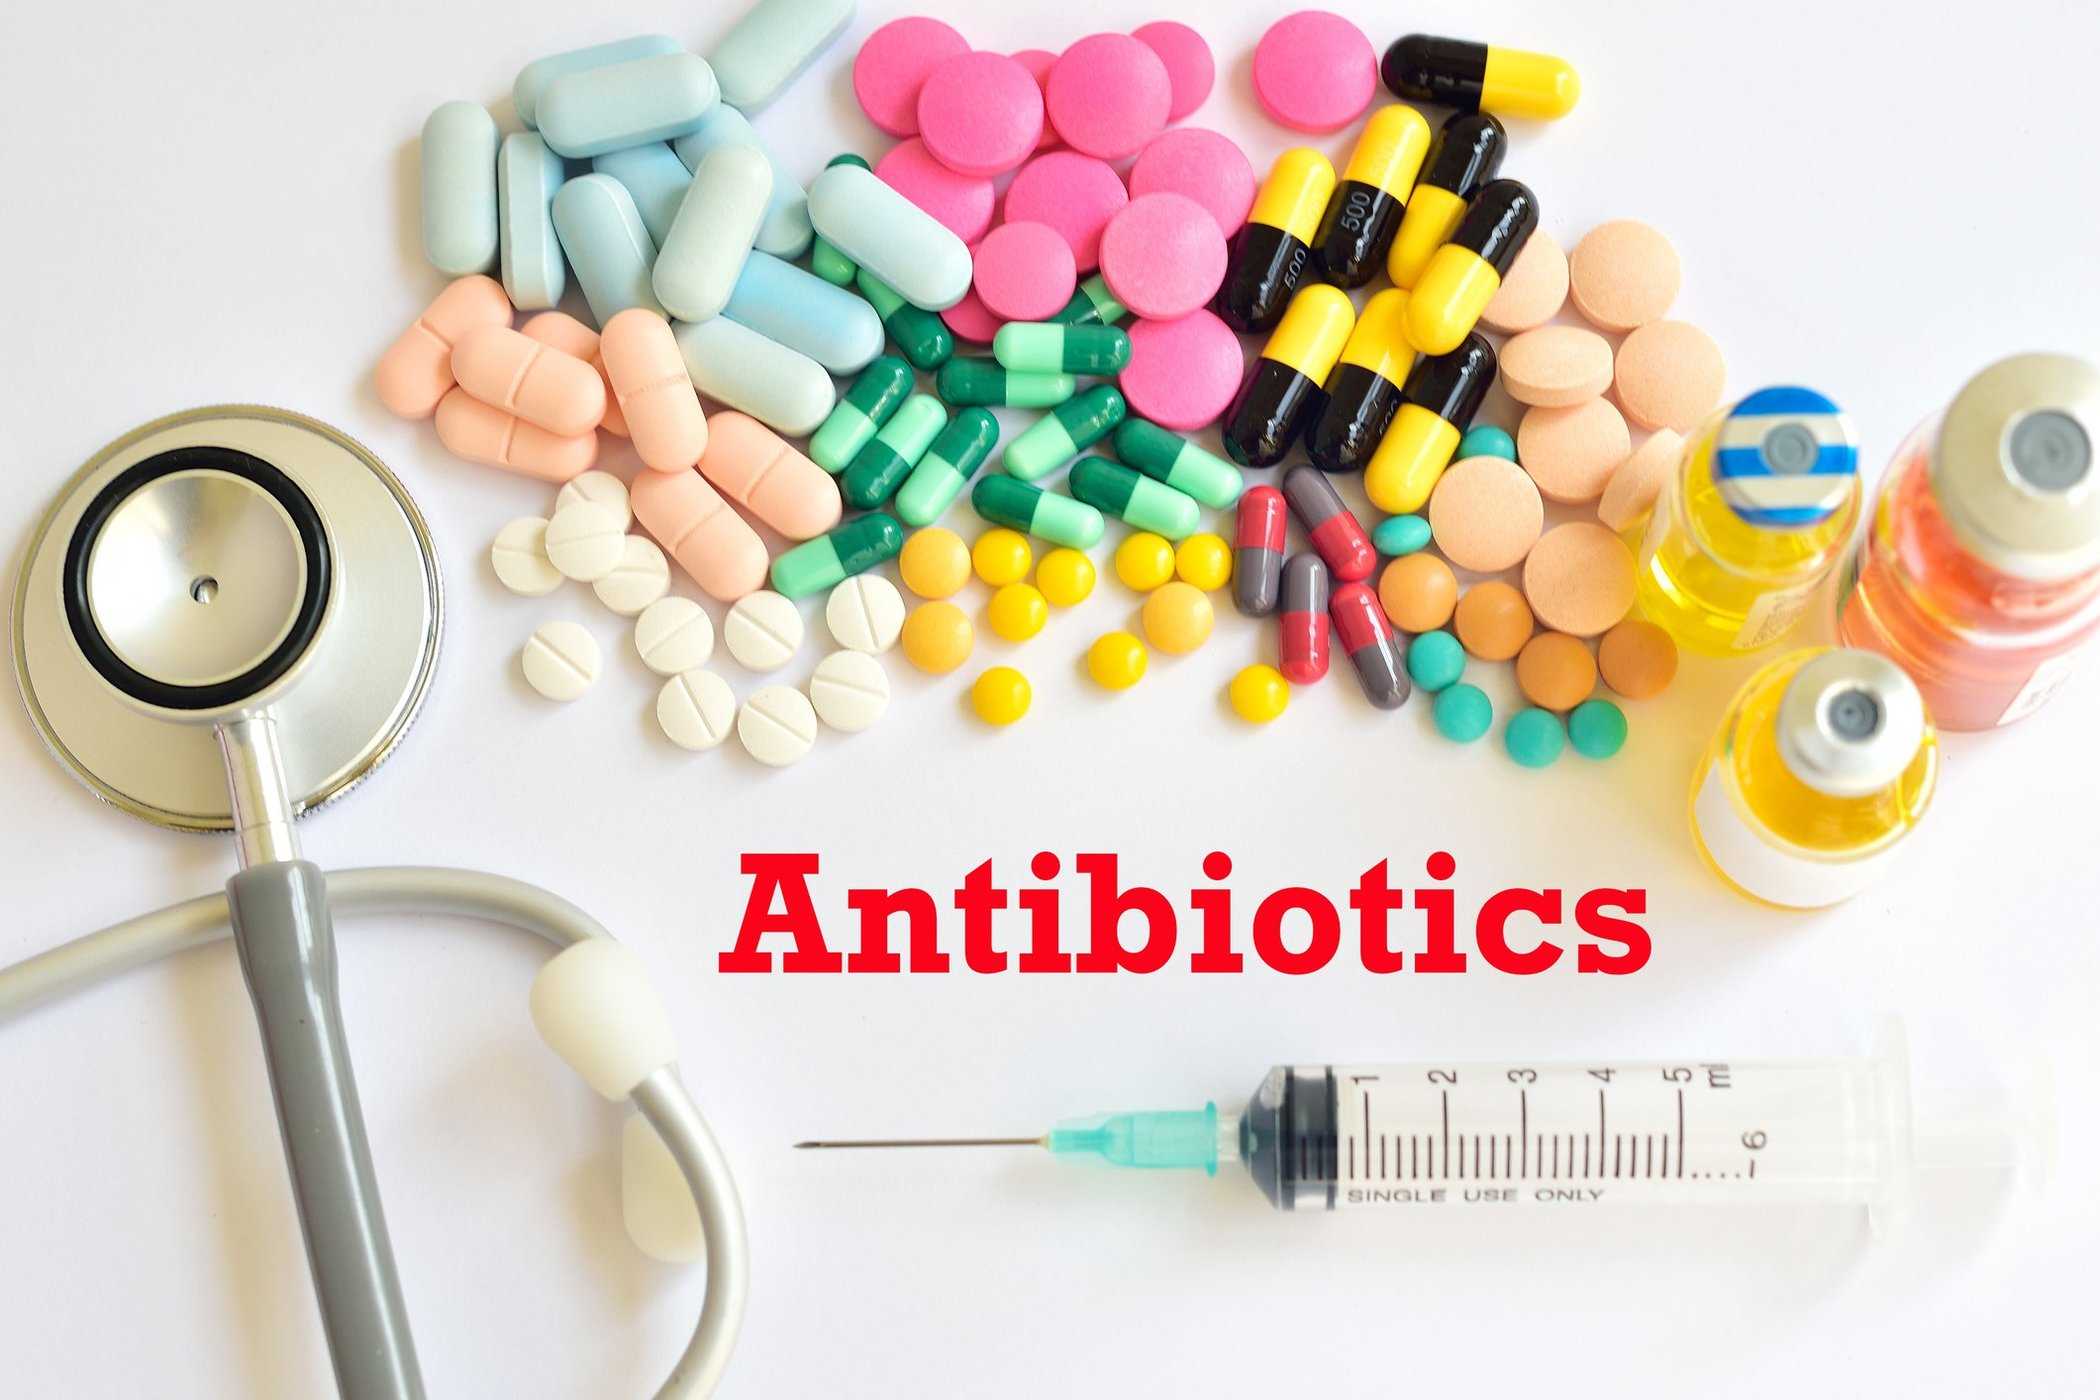 סקירת אנטיביוטיקה, מאיך הם פועלים ועד לסיווג סוגים